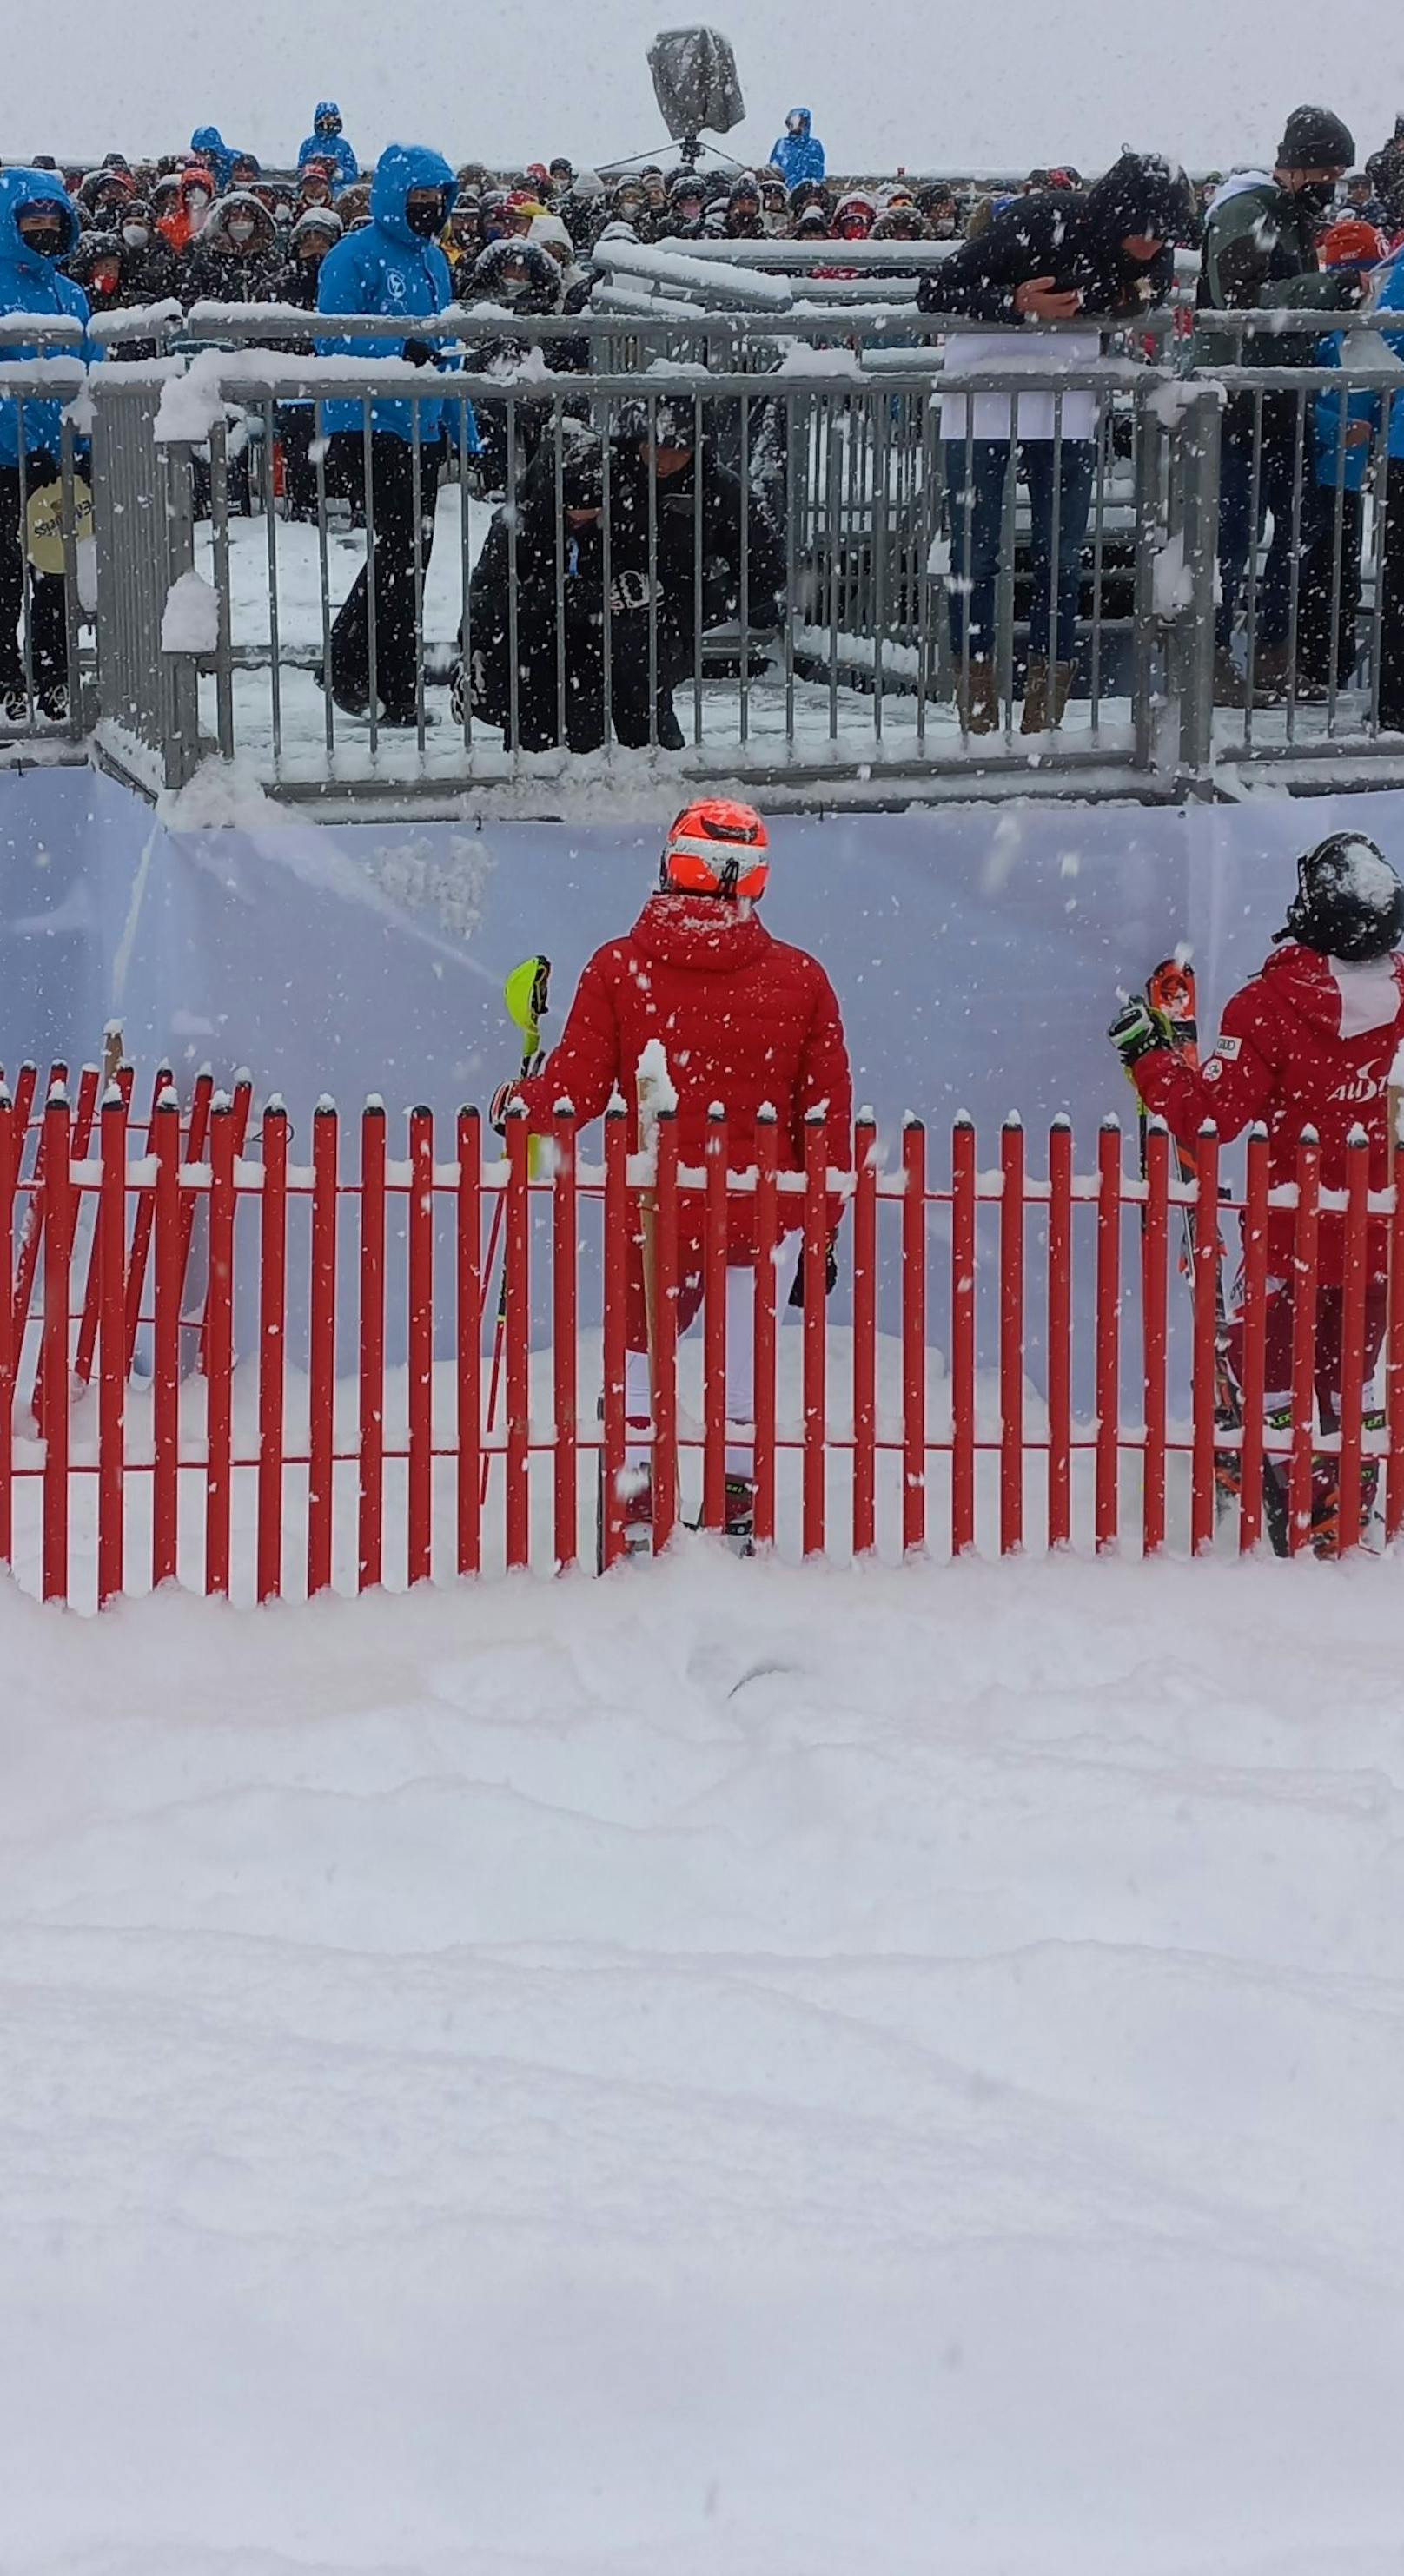 Der Slalom war gut besucht. Auch Mario Matt (hockend beim Zaun) schaute vorbei, fachsimpelt hier mit Bruder Michael (vorne in roter Jacke).